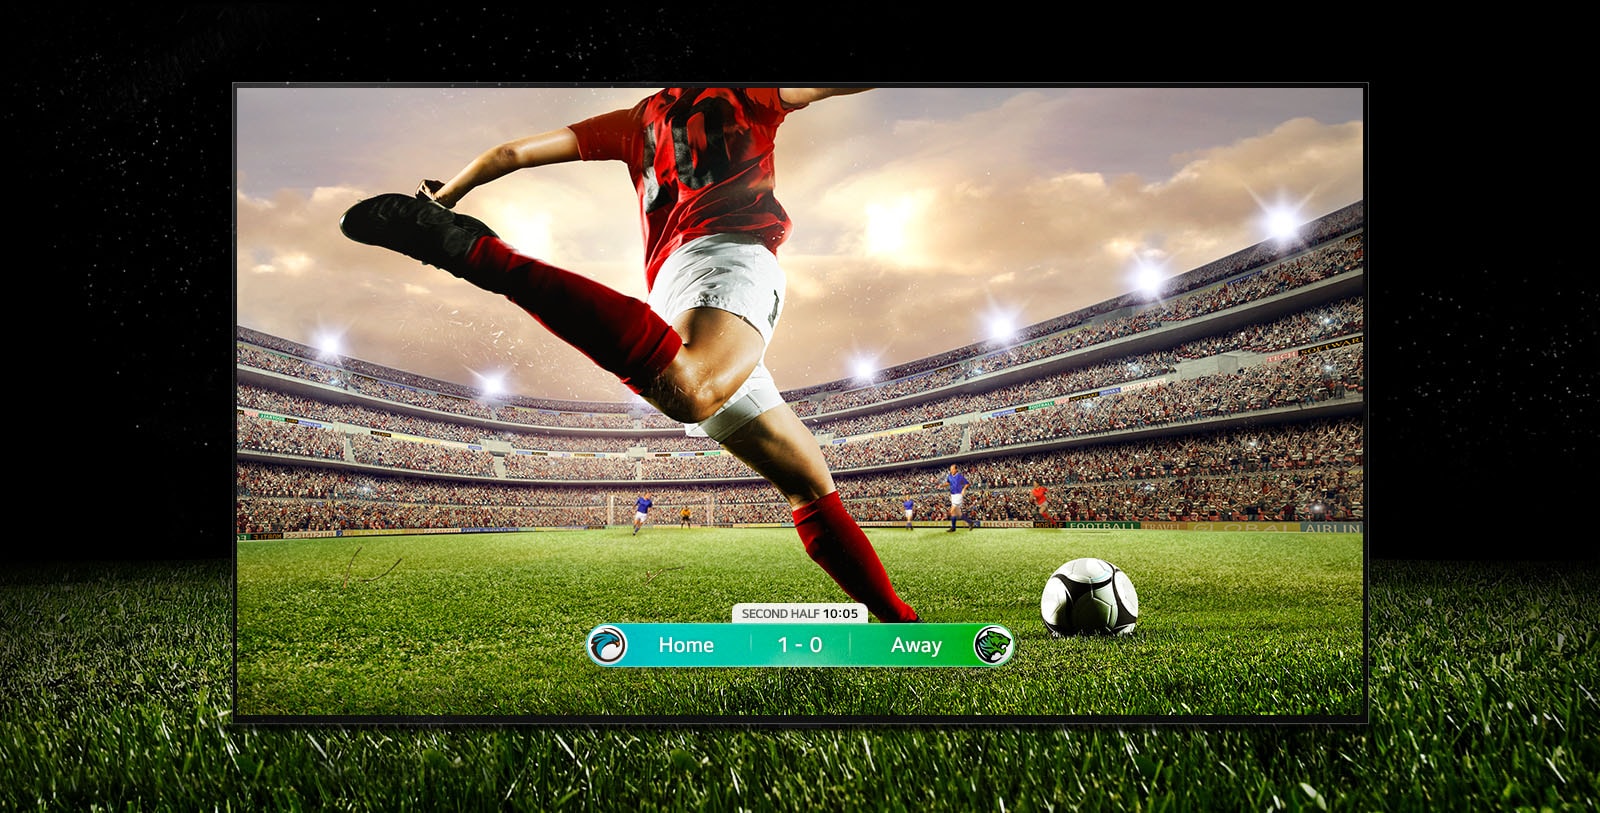 Na ekranu se igra nogometna tekma.  Igralec v rdečem dresu bo brcnil žogo po travniku.  Rezultat je prikazan na dnu zaslona.  Travna trava se razteza preko televizorja in tako izboljša pristno gledanje.